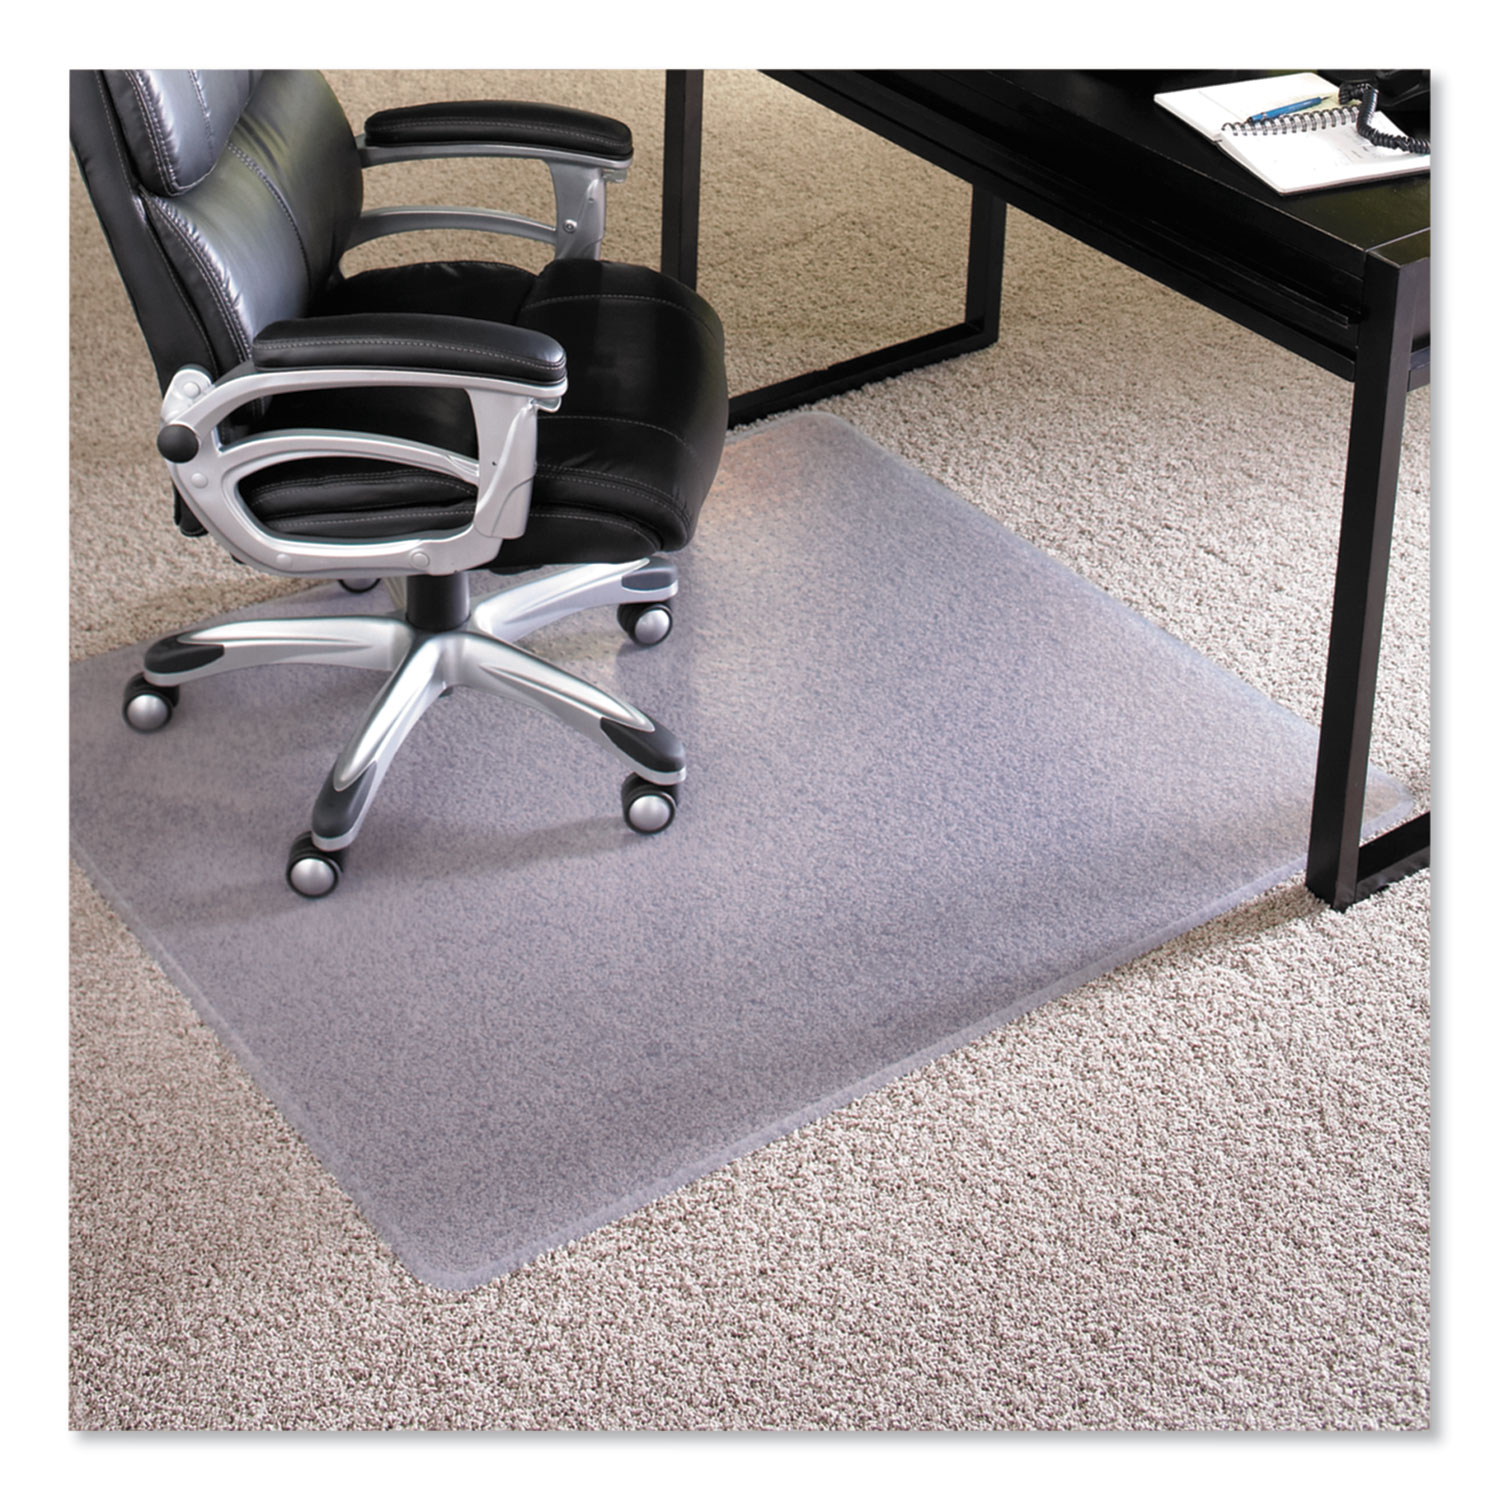  ES Robbins 124377 Performance Series AnchorBar Chair Mat for Carpet up to 1, 46 x 60, Clear (ESR124377) 